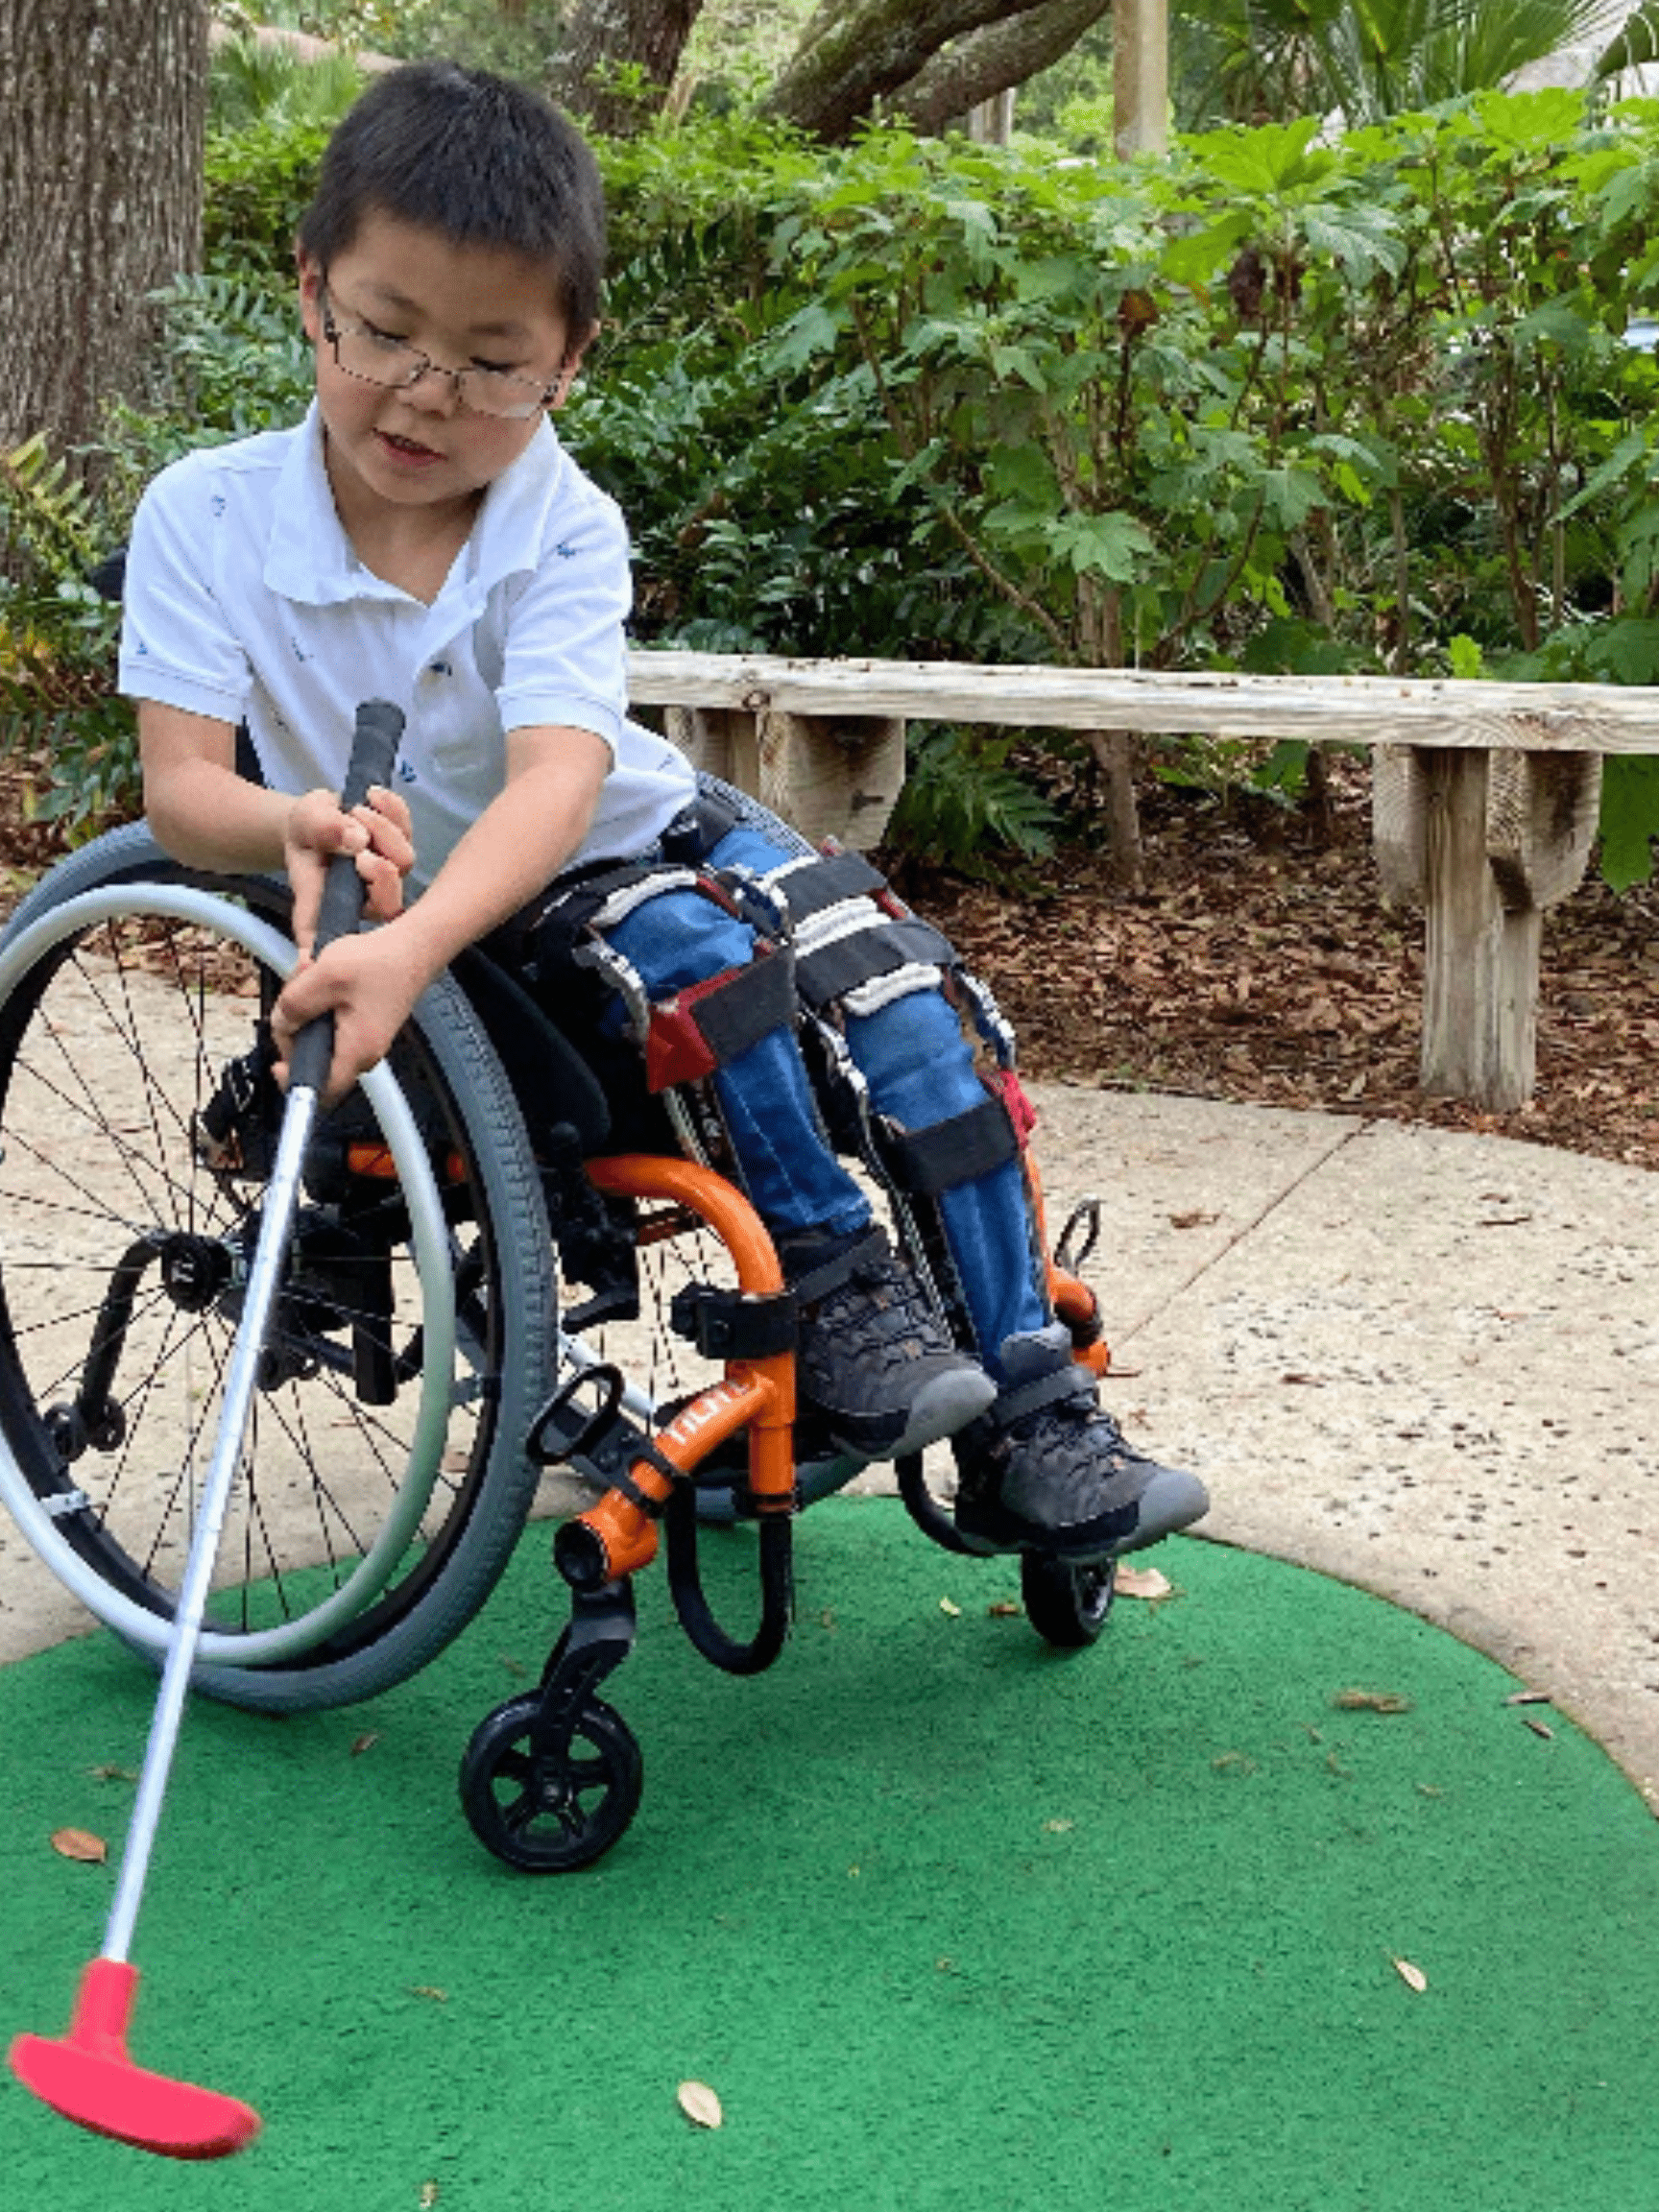 Little boy in a wheelchair playing putt putt golf